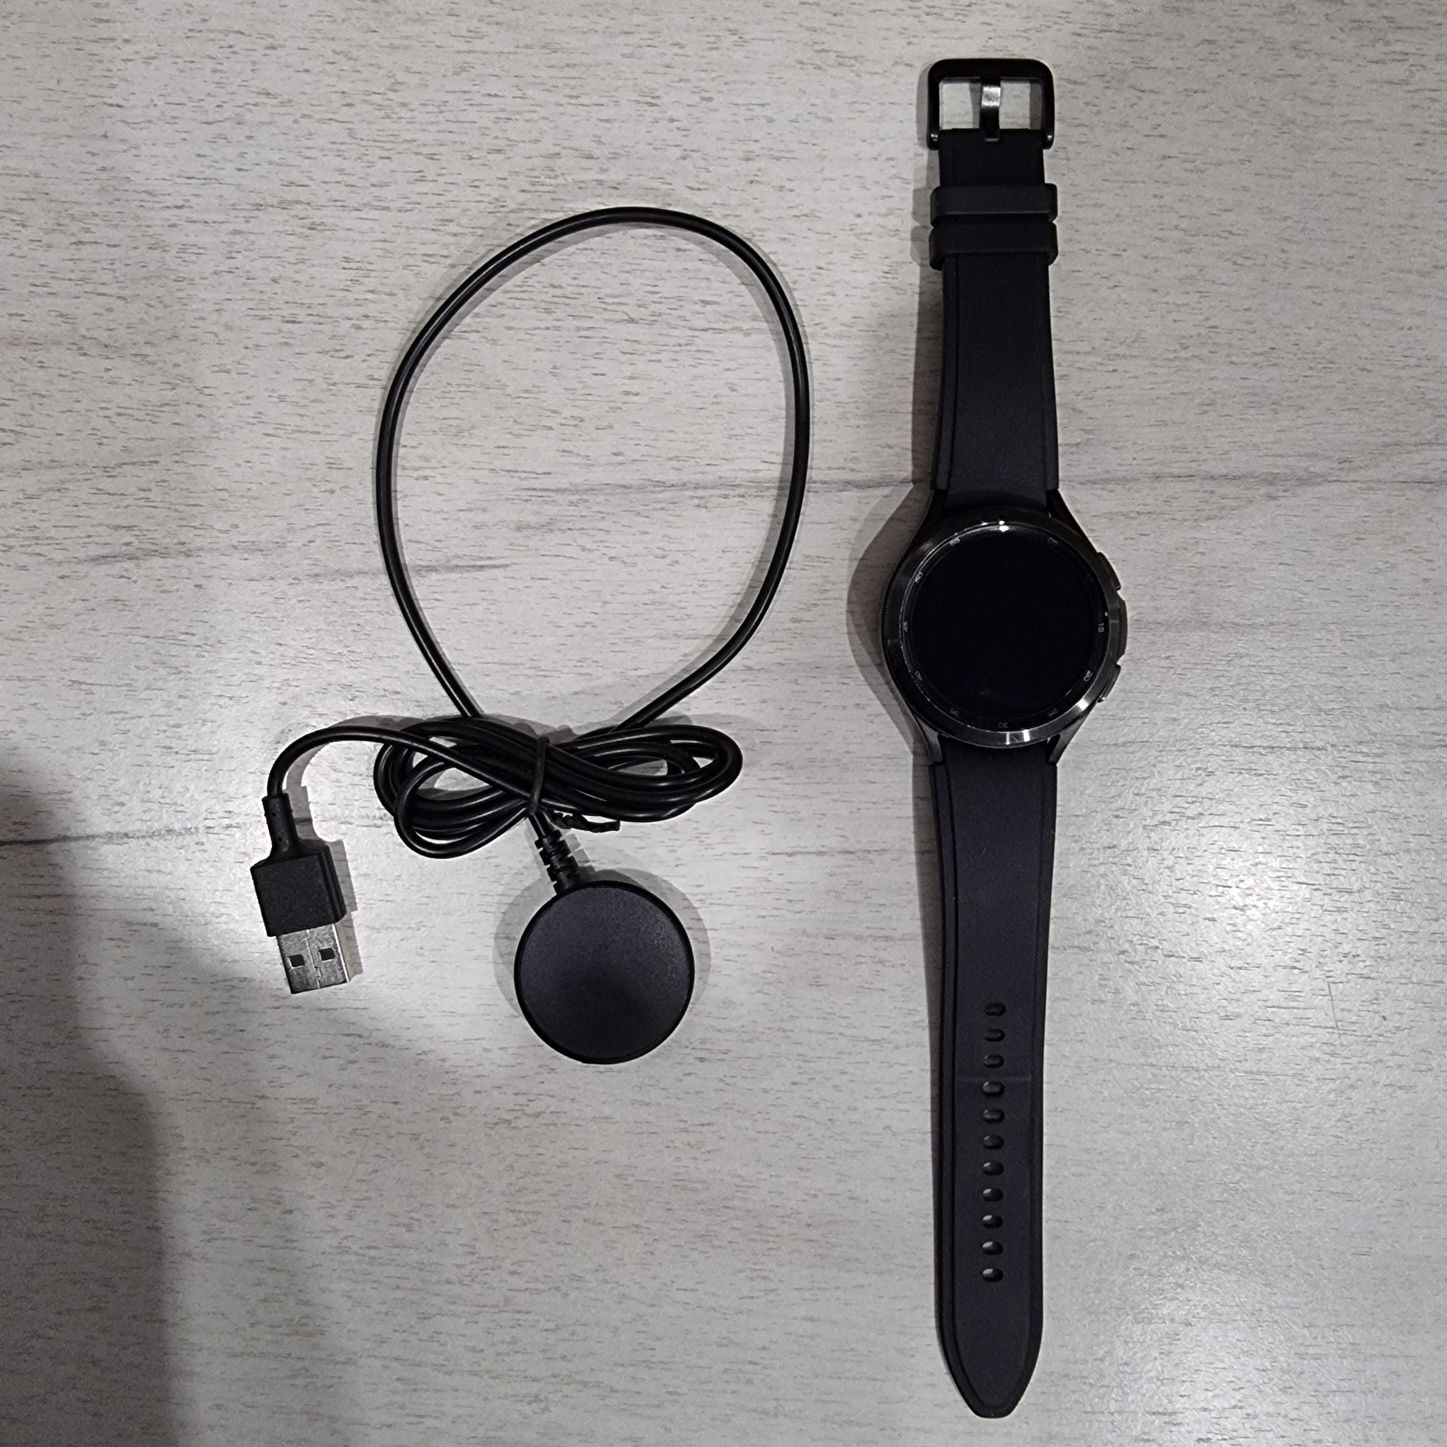 Galaxy Watch 4 Classic 46mm eSIM (SM-R895F)